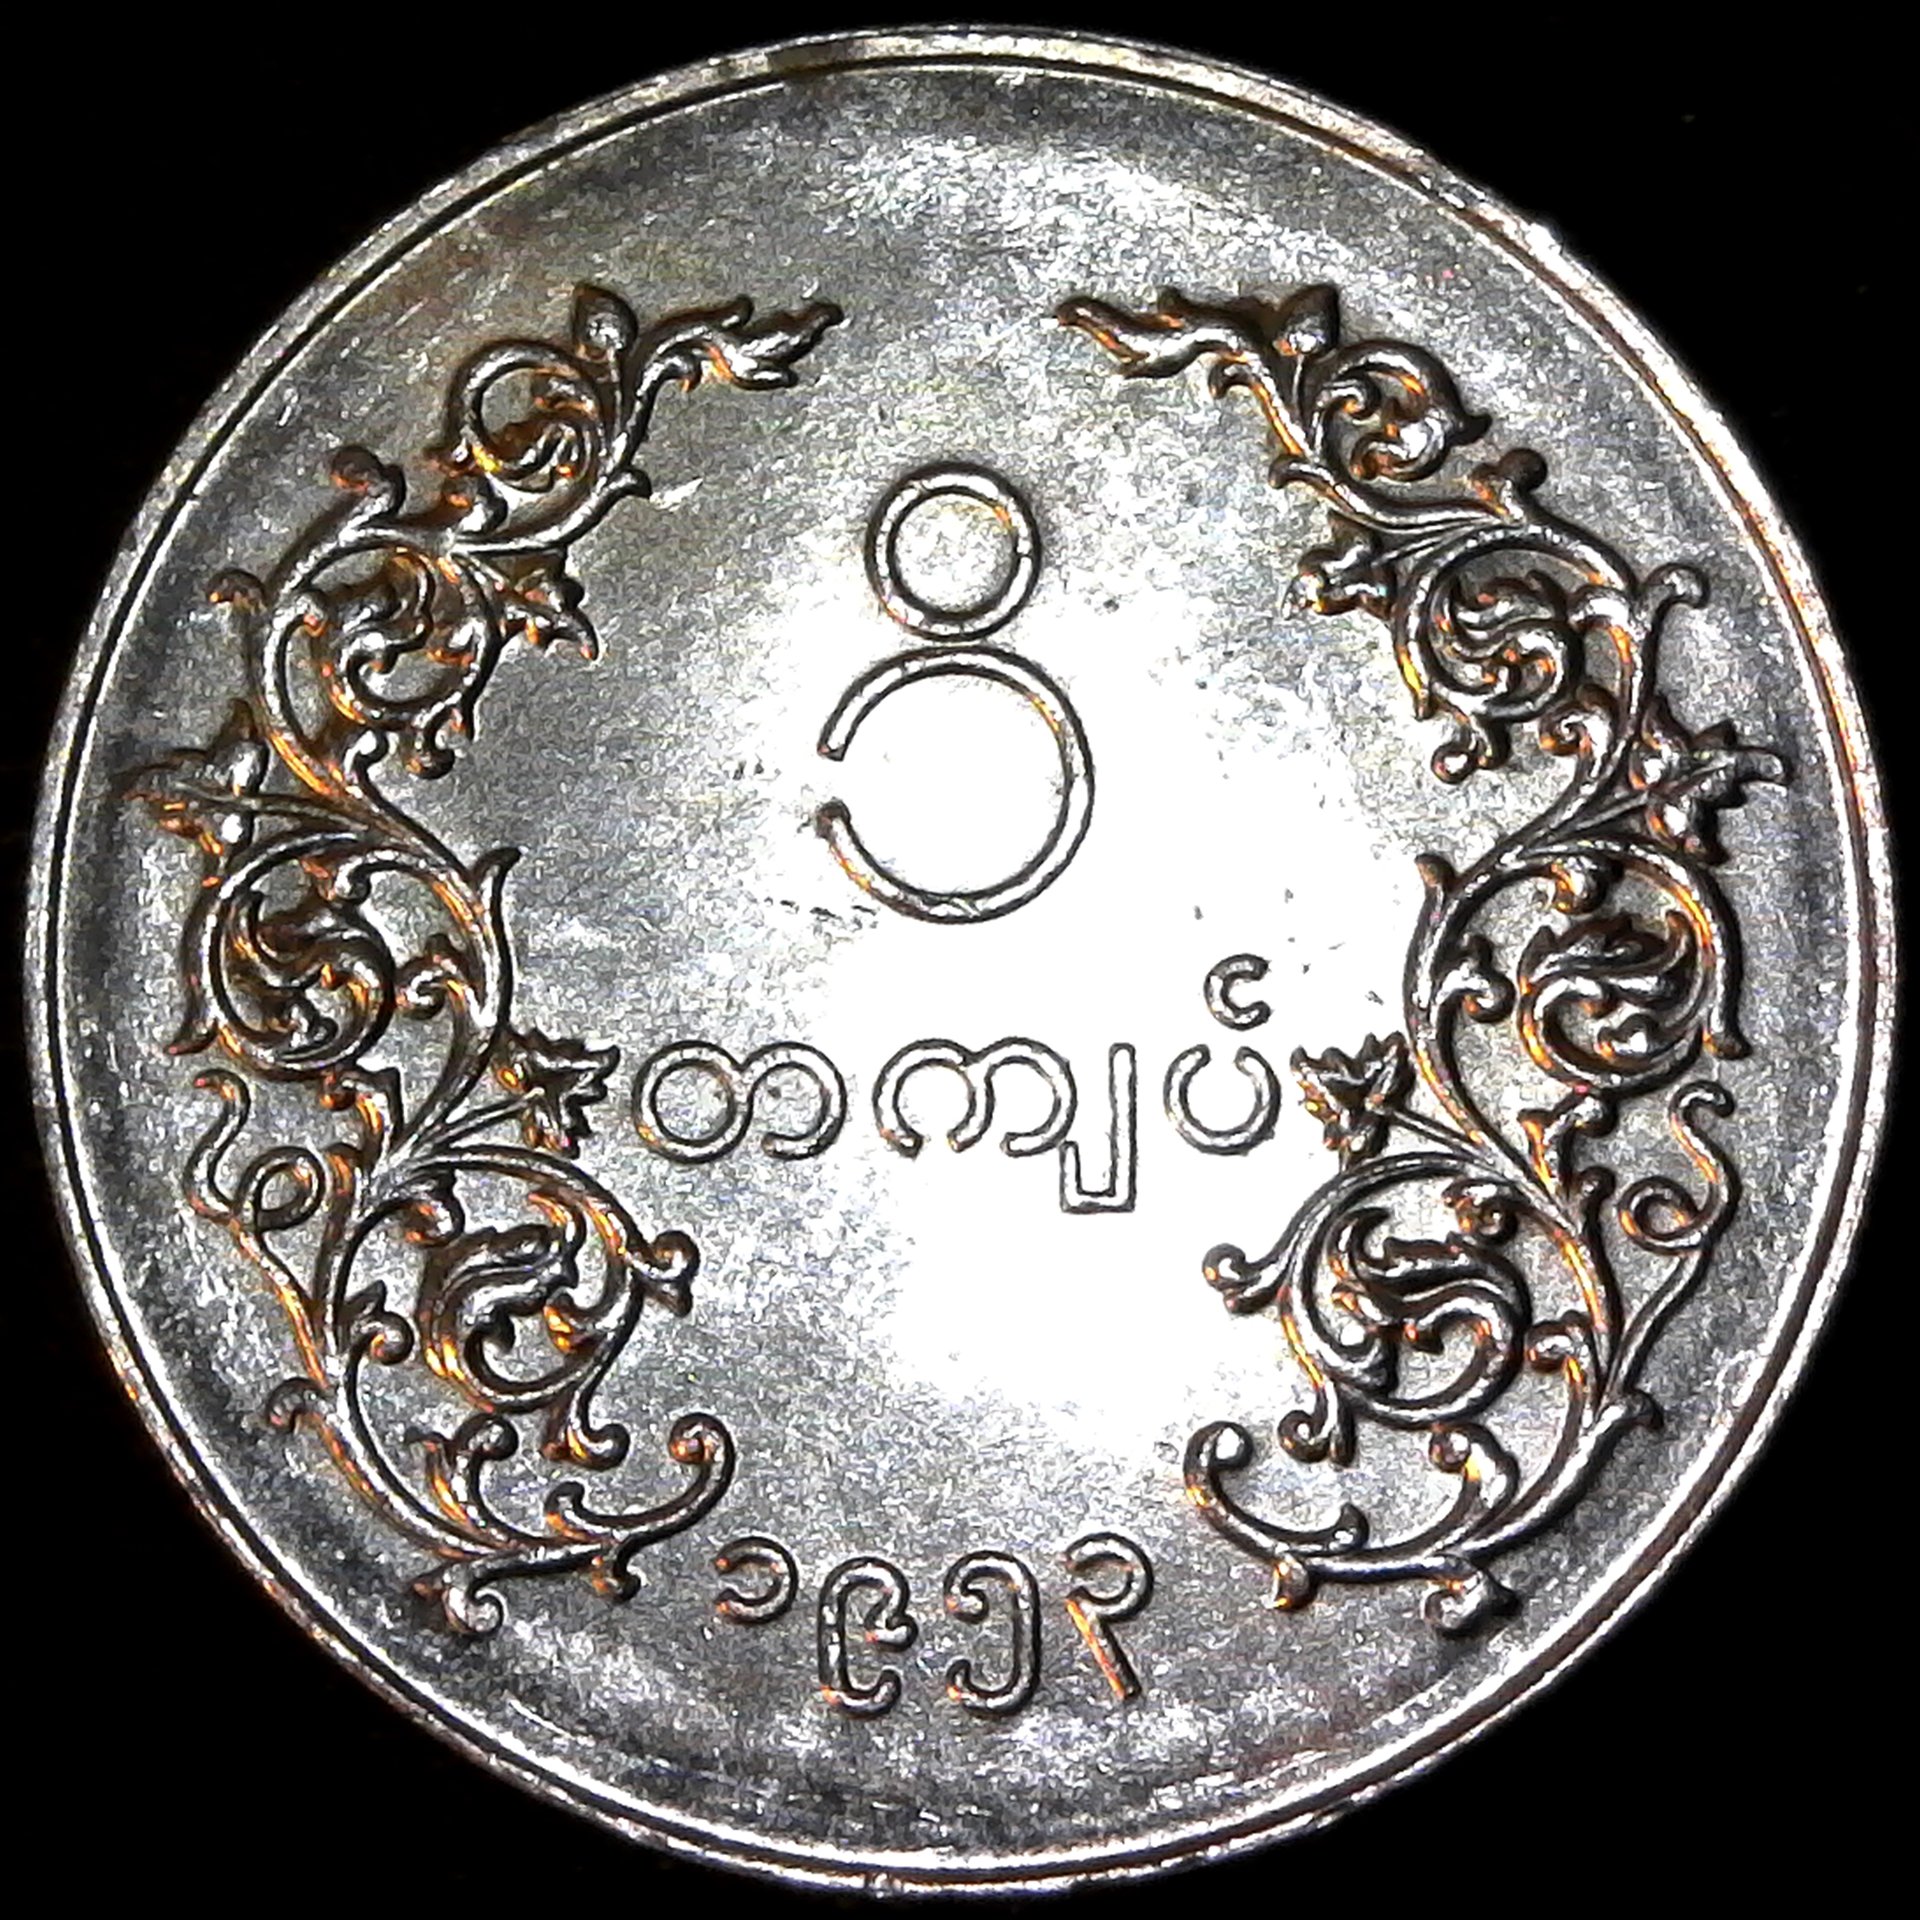 Burma One Kyat 1953 rev.jpg